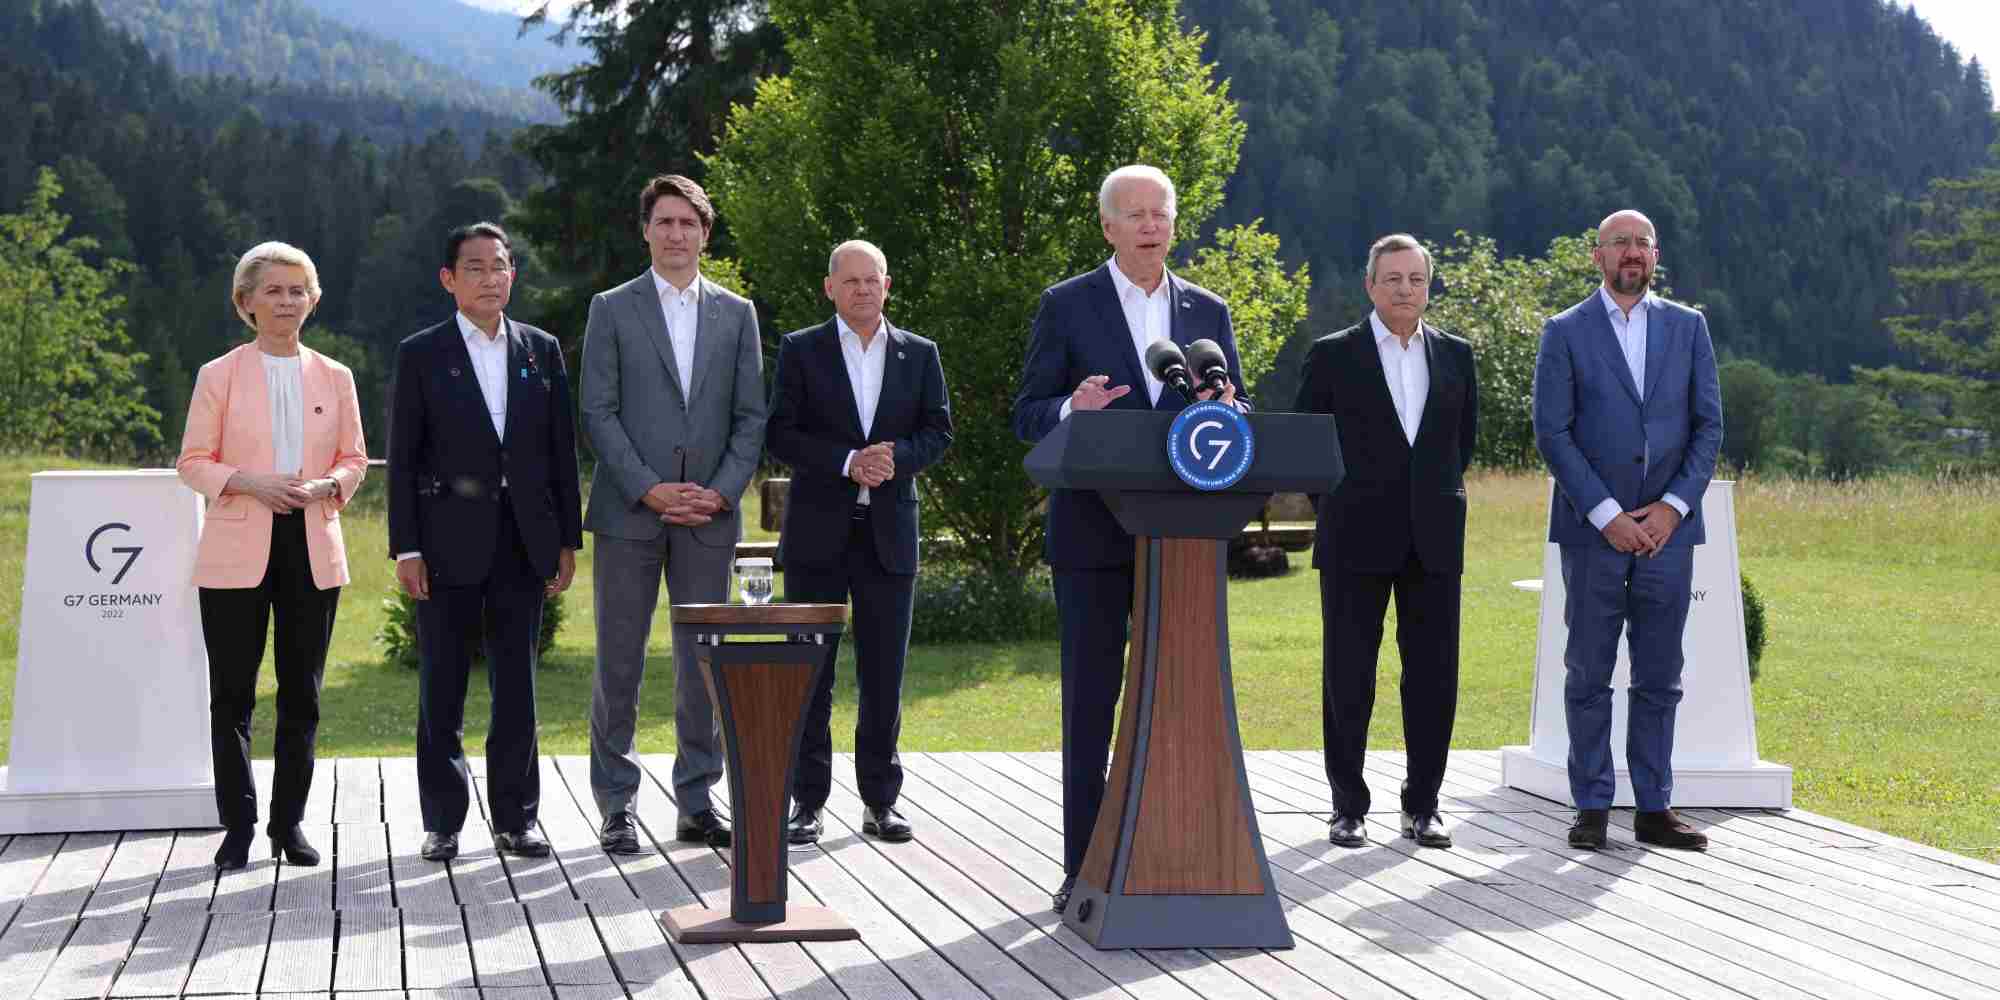 Η ομάδα των G7